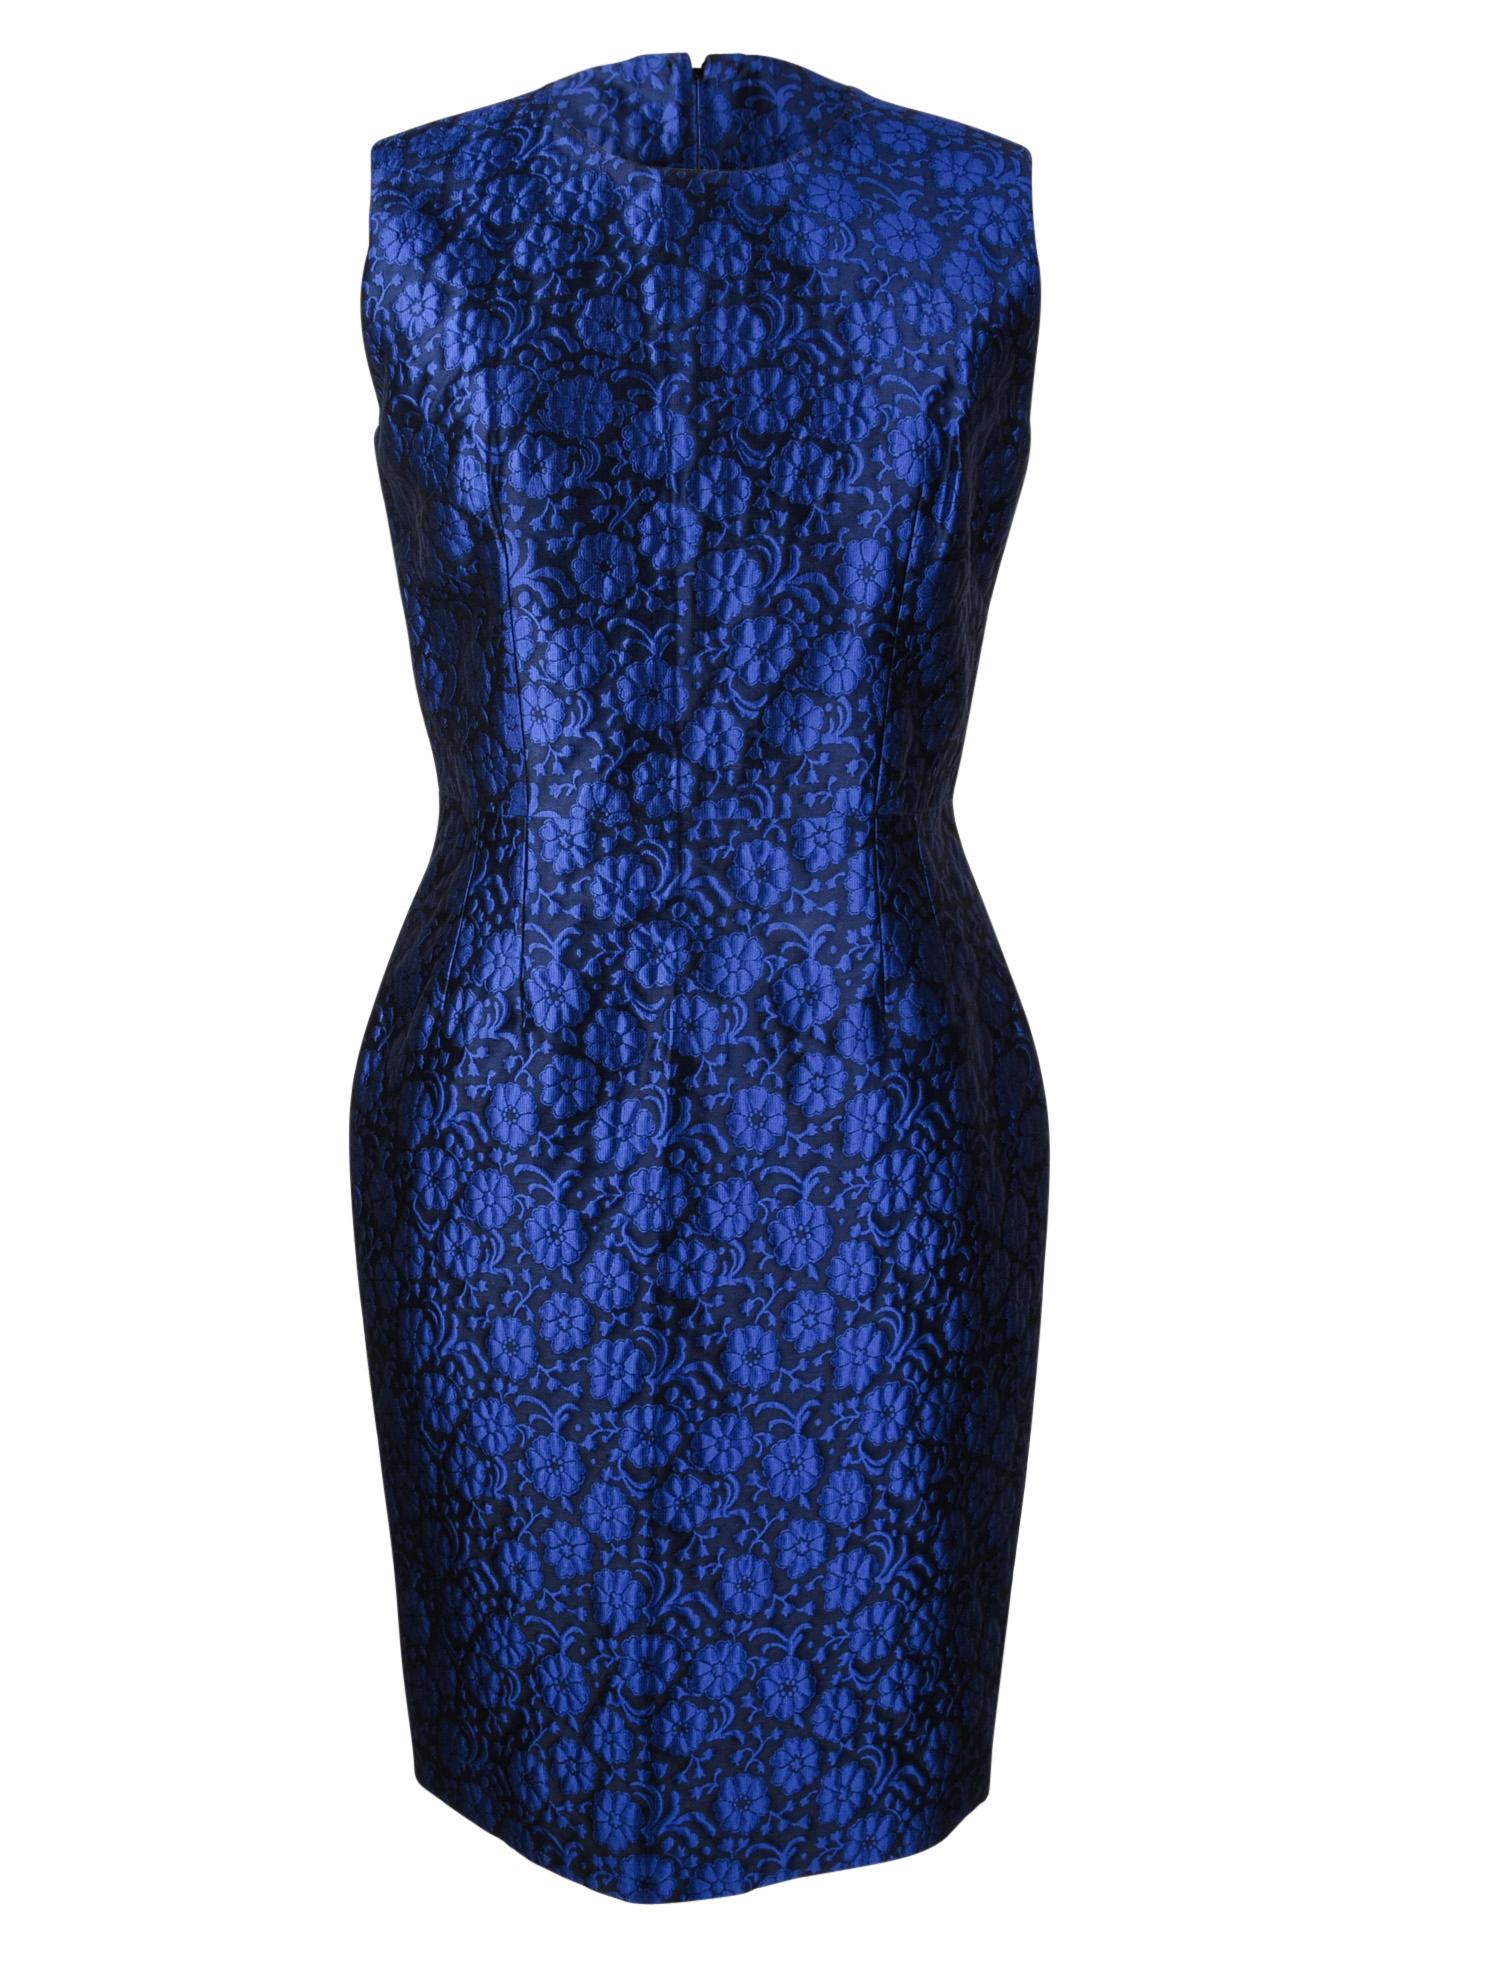 dior blue floral dress